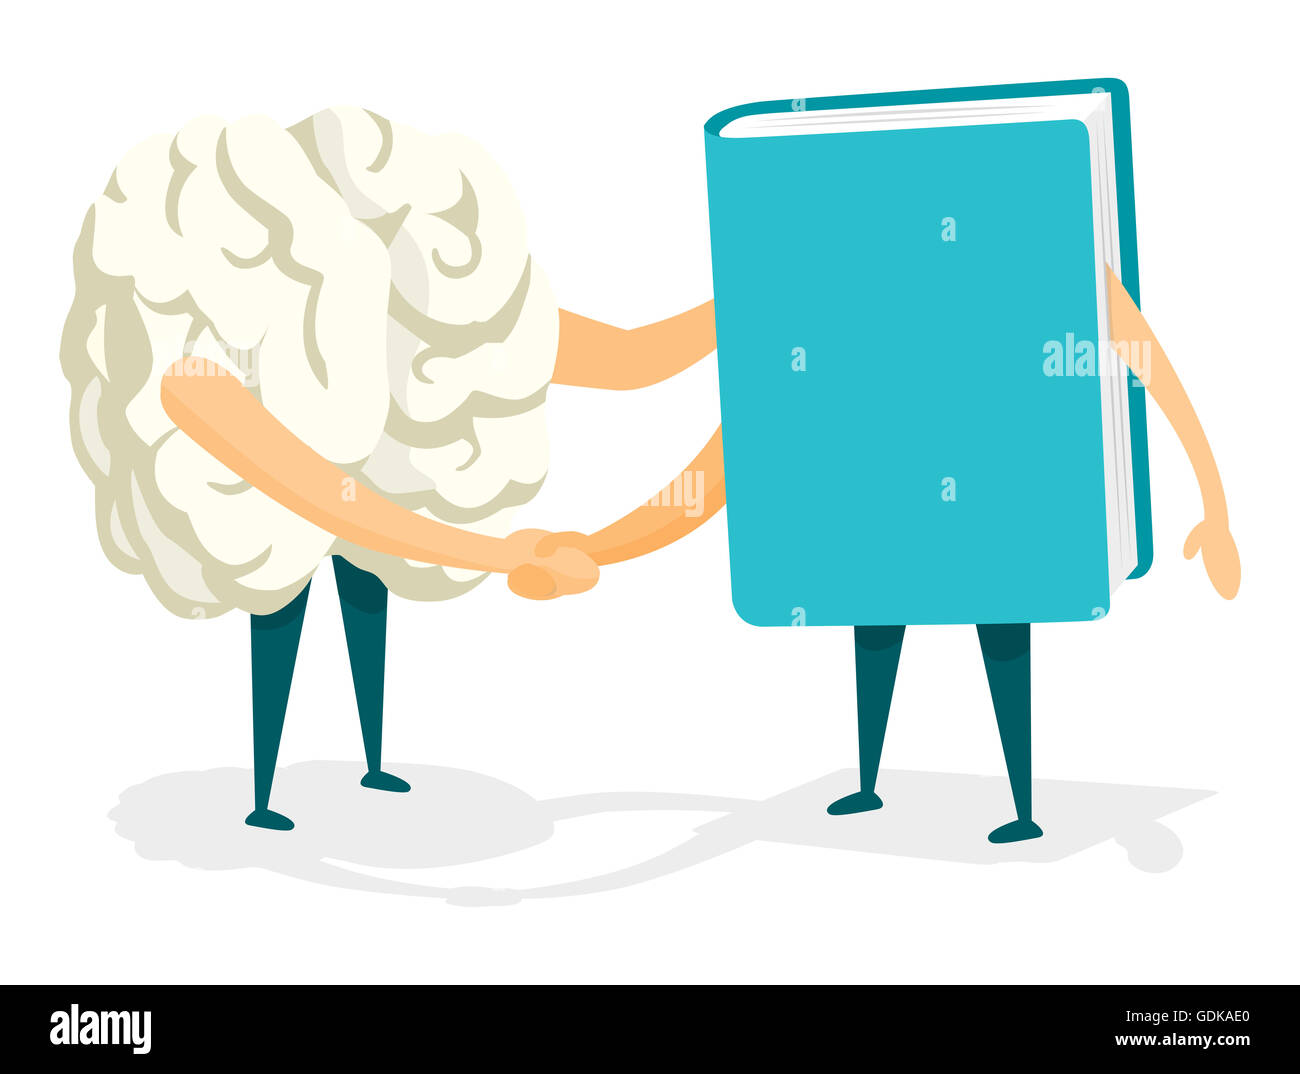 Cartoon illustration de poignée de main amicale entre cerveau et livre Banque D'Images